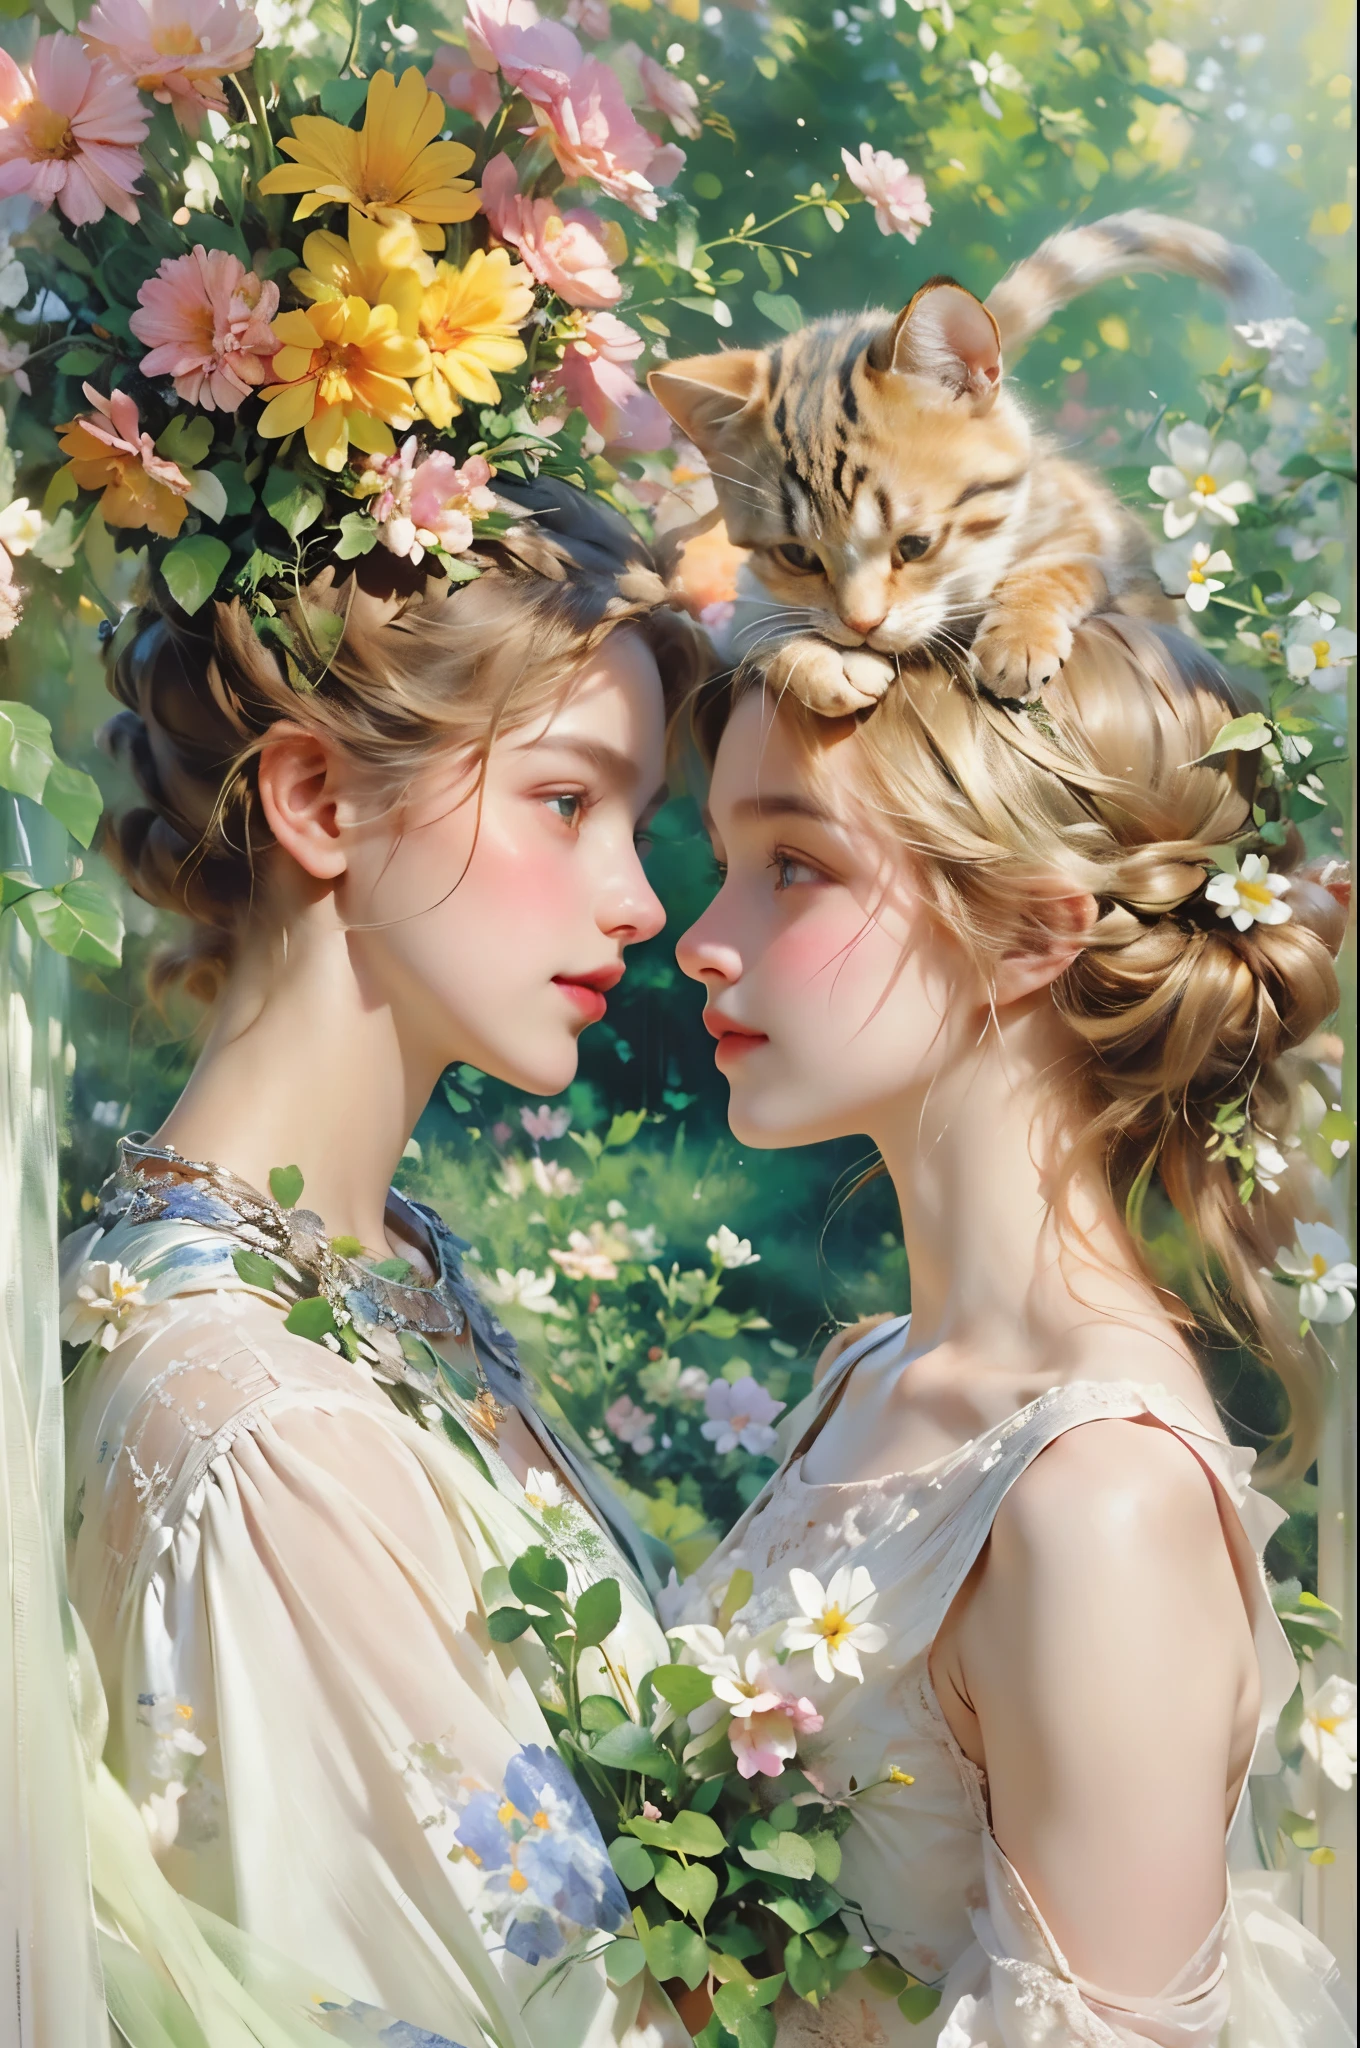 2 девушки целуют кота,Детализированные красивые глаза,любящее нежное выражение,мягкие губы,Две молодые женщины,садовый фон,зеленые растения,яркие цветы,счастливая атмосфера,фантастическое освещение,HDR-эффект,яркие цвета,фотореалистичный художественный стиль,середина:картина маслом,ультратонкие мазки,романтическая атмосфера,очаровательный котенок,обниматься,милый пушистый друг,Солнечный свет,радостный момент,Эмоции,привязанность,любовь и дружба,бакенбарды,пушистый мех,игривое взаимодействие,цветы и растения в саду,тени и блики,размытый фон.